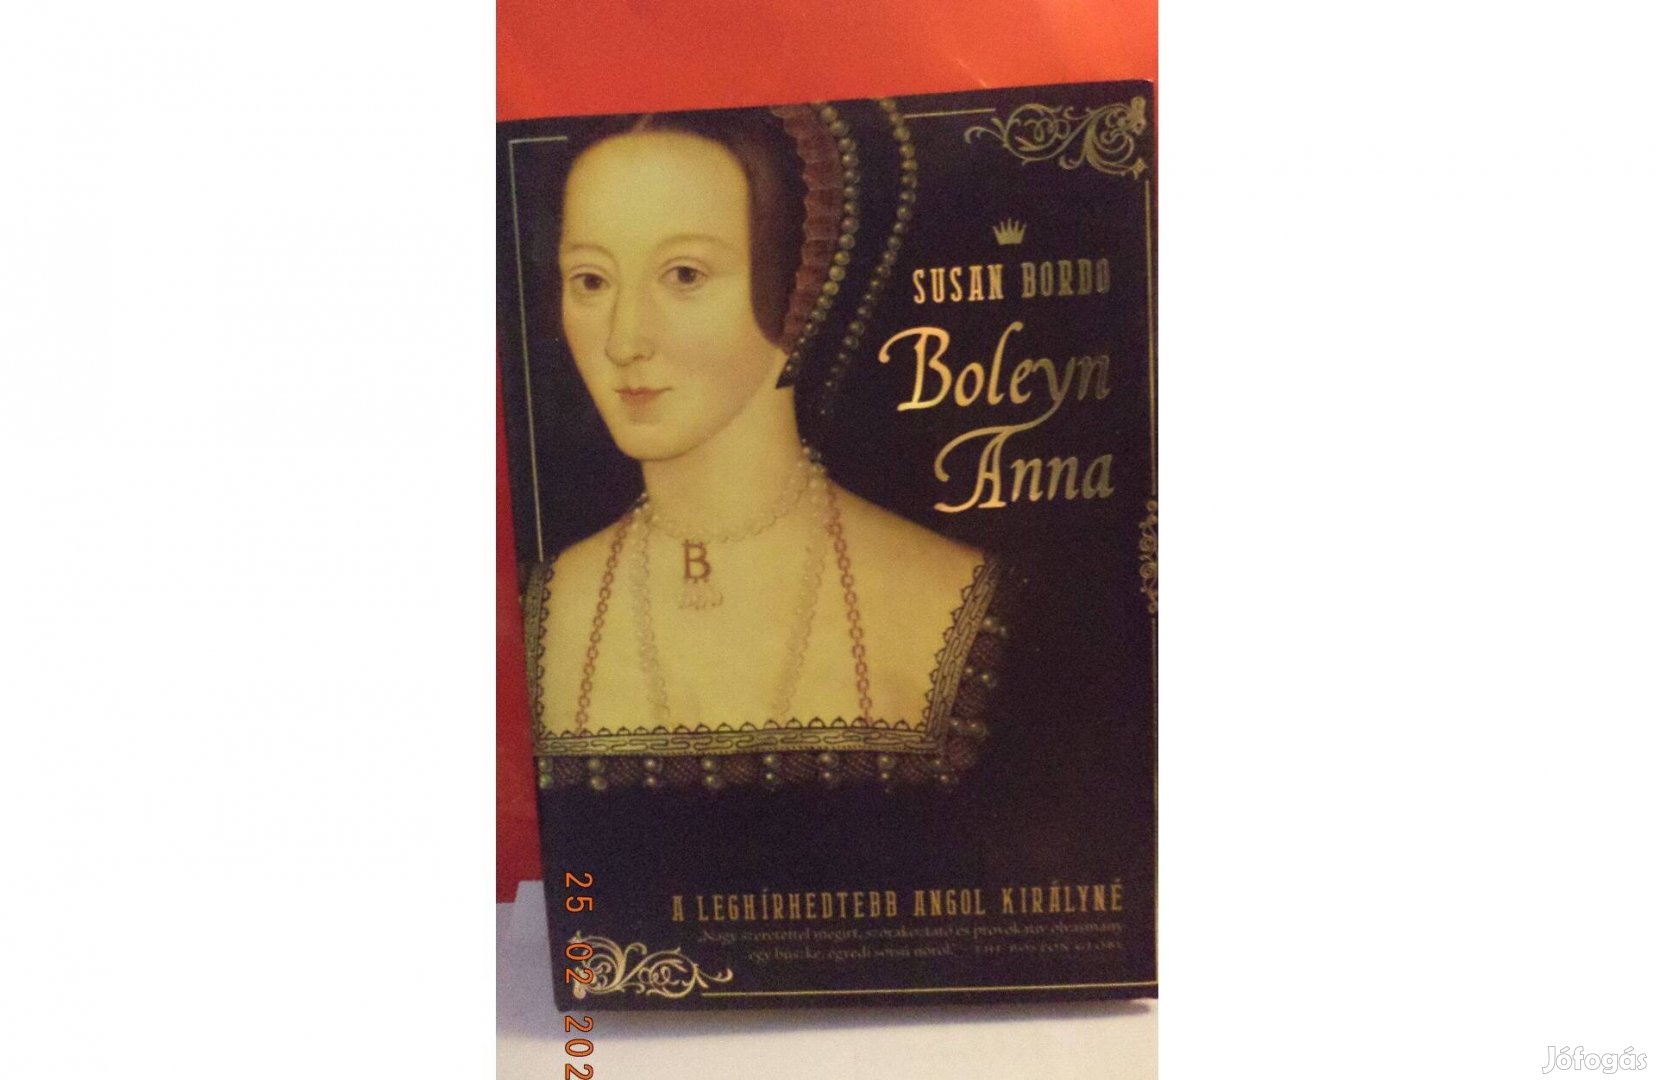 Susan Bordo: Boleyn Anna